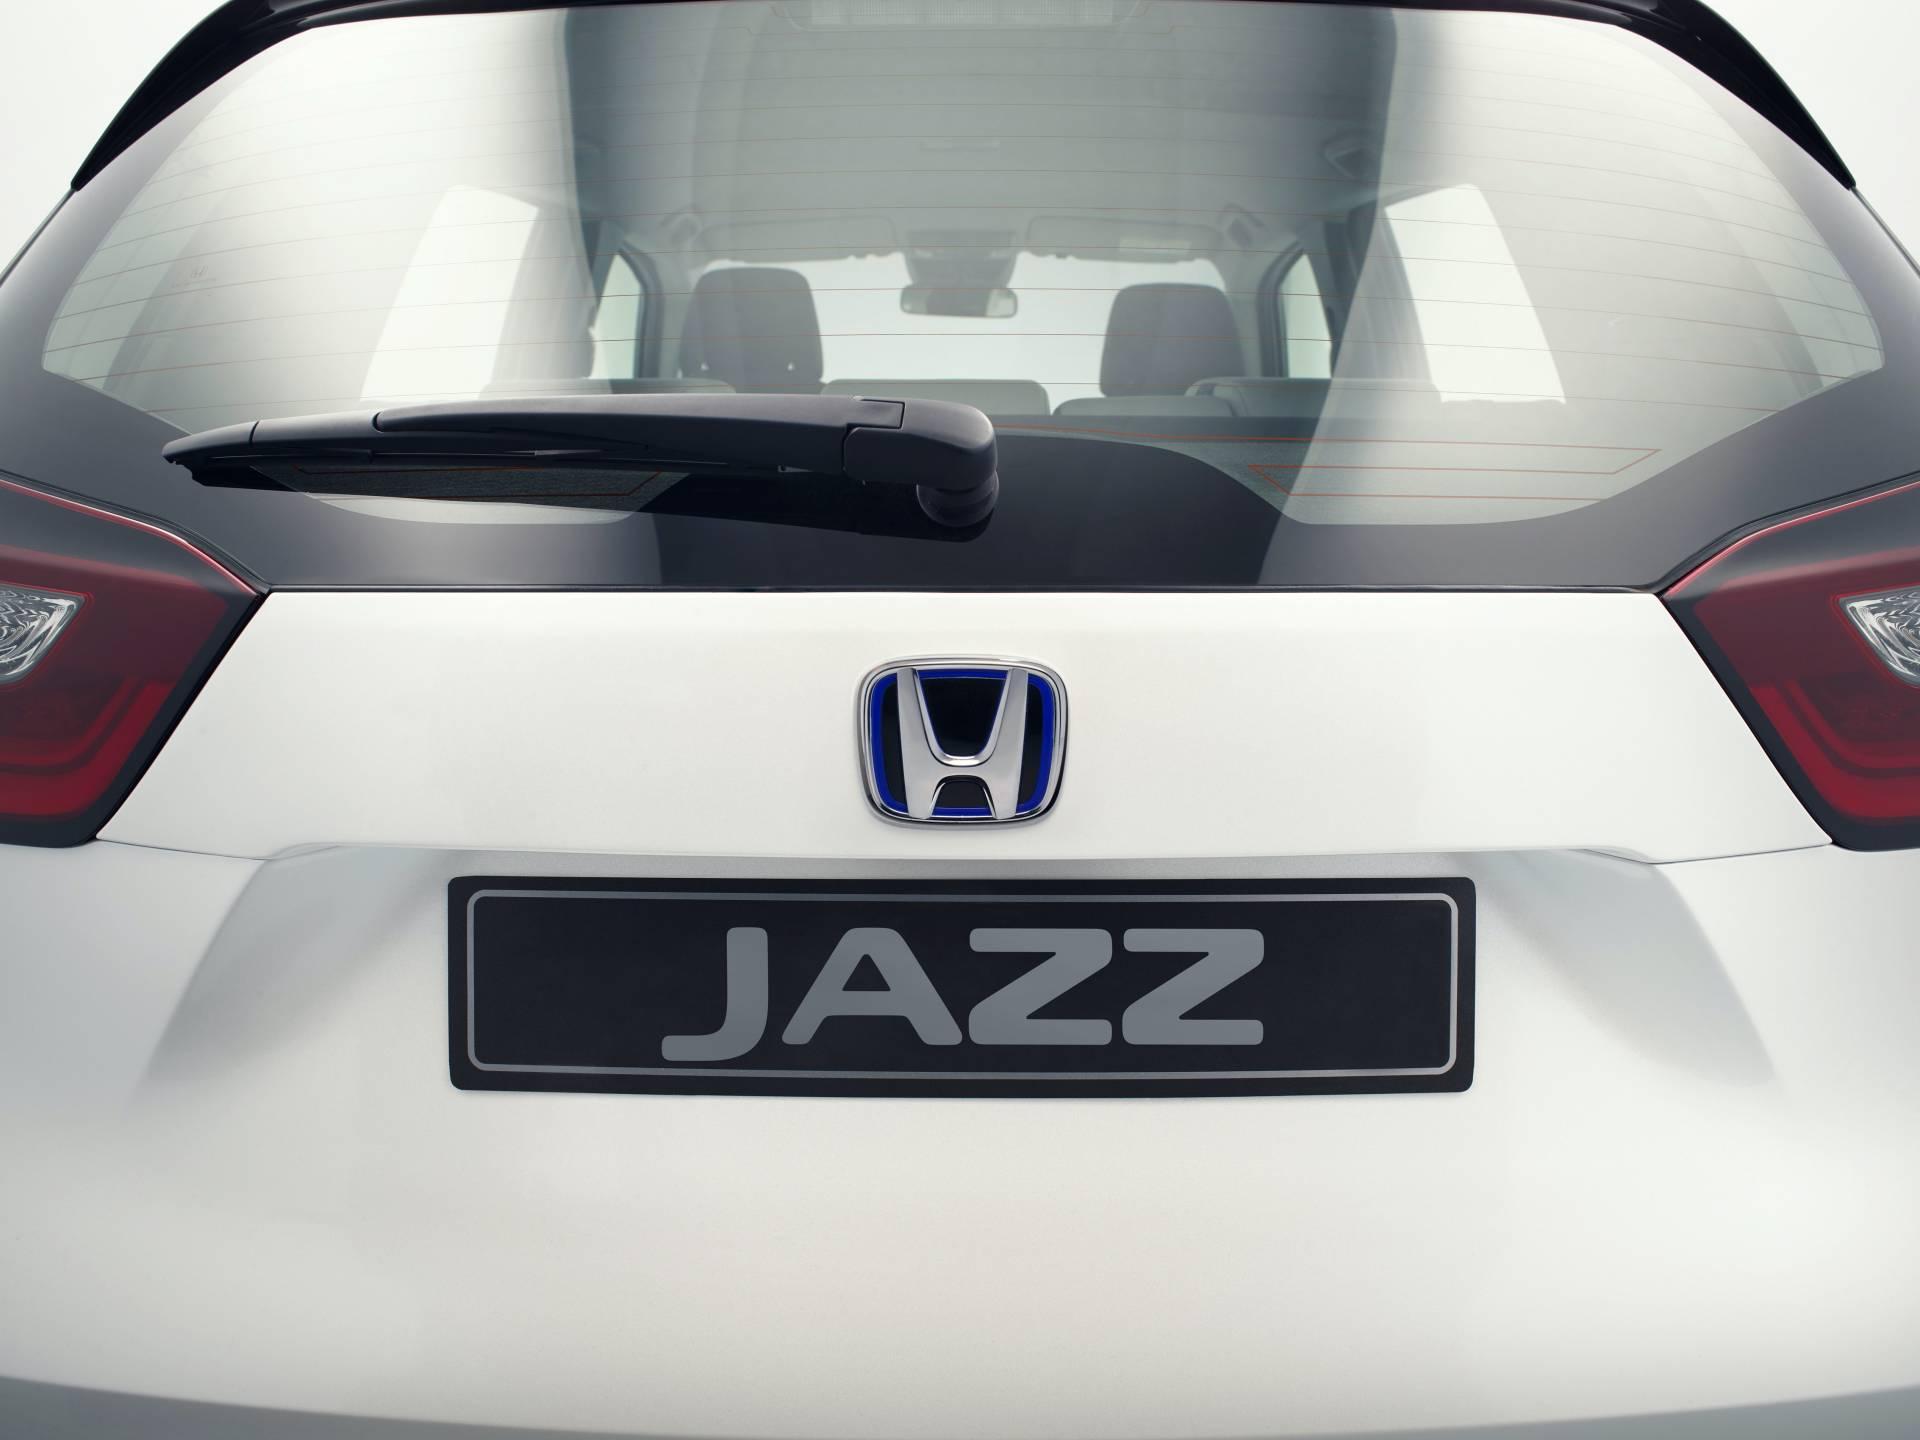 เผยโฉม All-new Honda Jazz 2020 เวอร์ชั่นยุโรป ลุคใหม่ 2 รุ่นย่อย